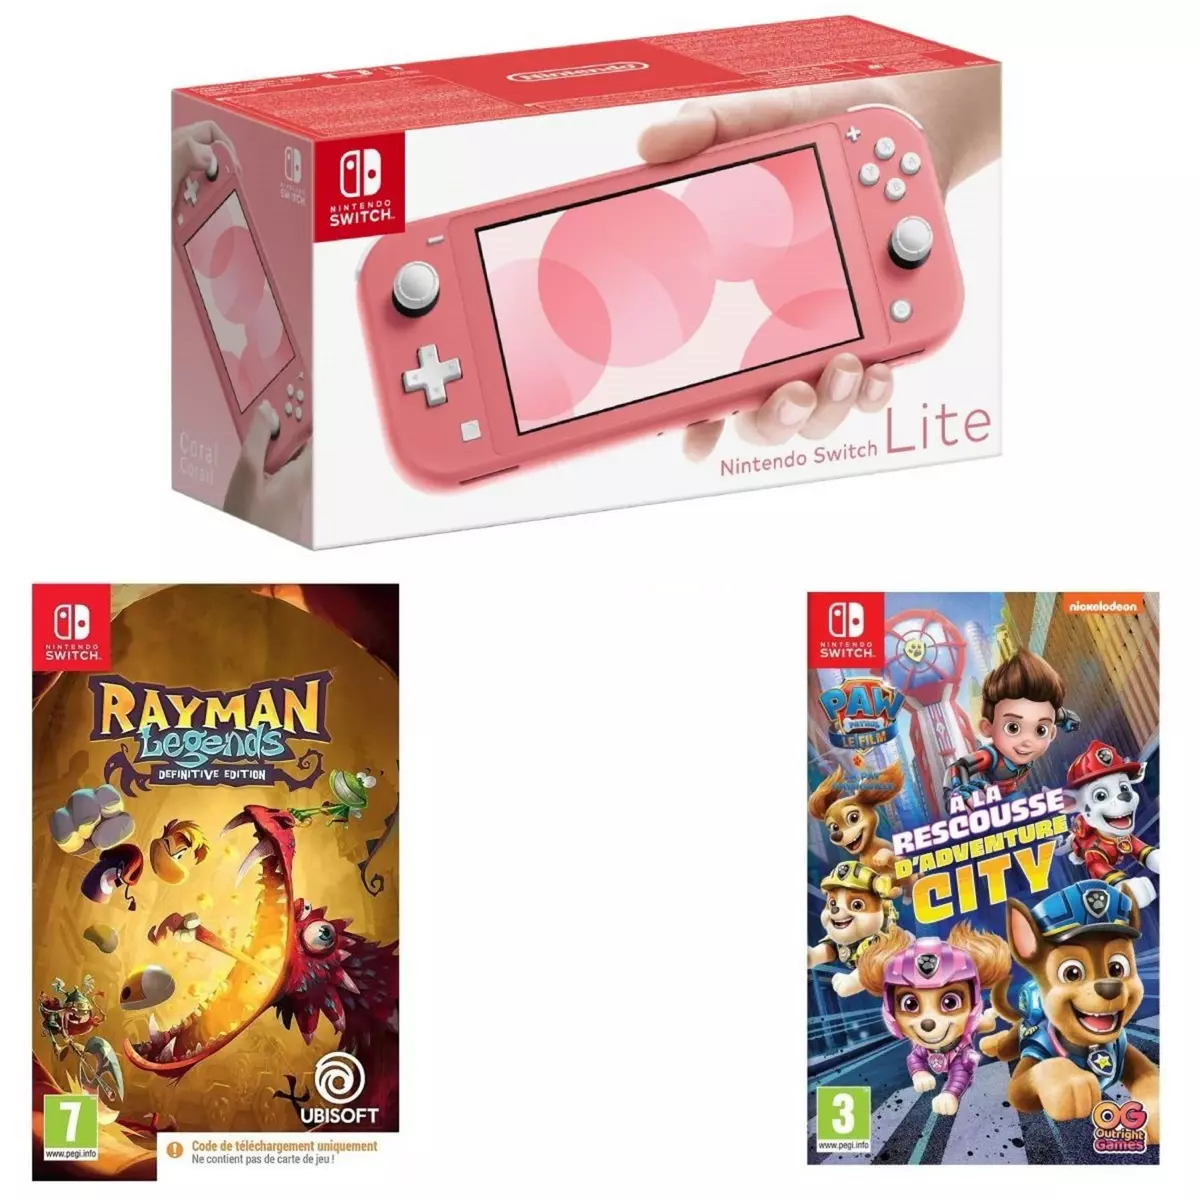 Console Nintendo Switch Lite Corail + Rayman Legends Definitive Edition - Code de Téléchargement +La Pat?Patrouille: le film A La Rescousse d?Adventure City CIB